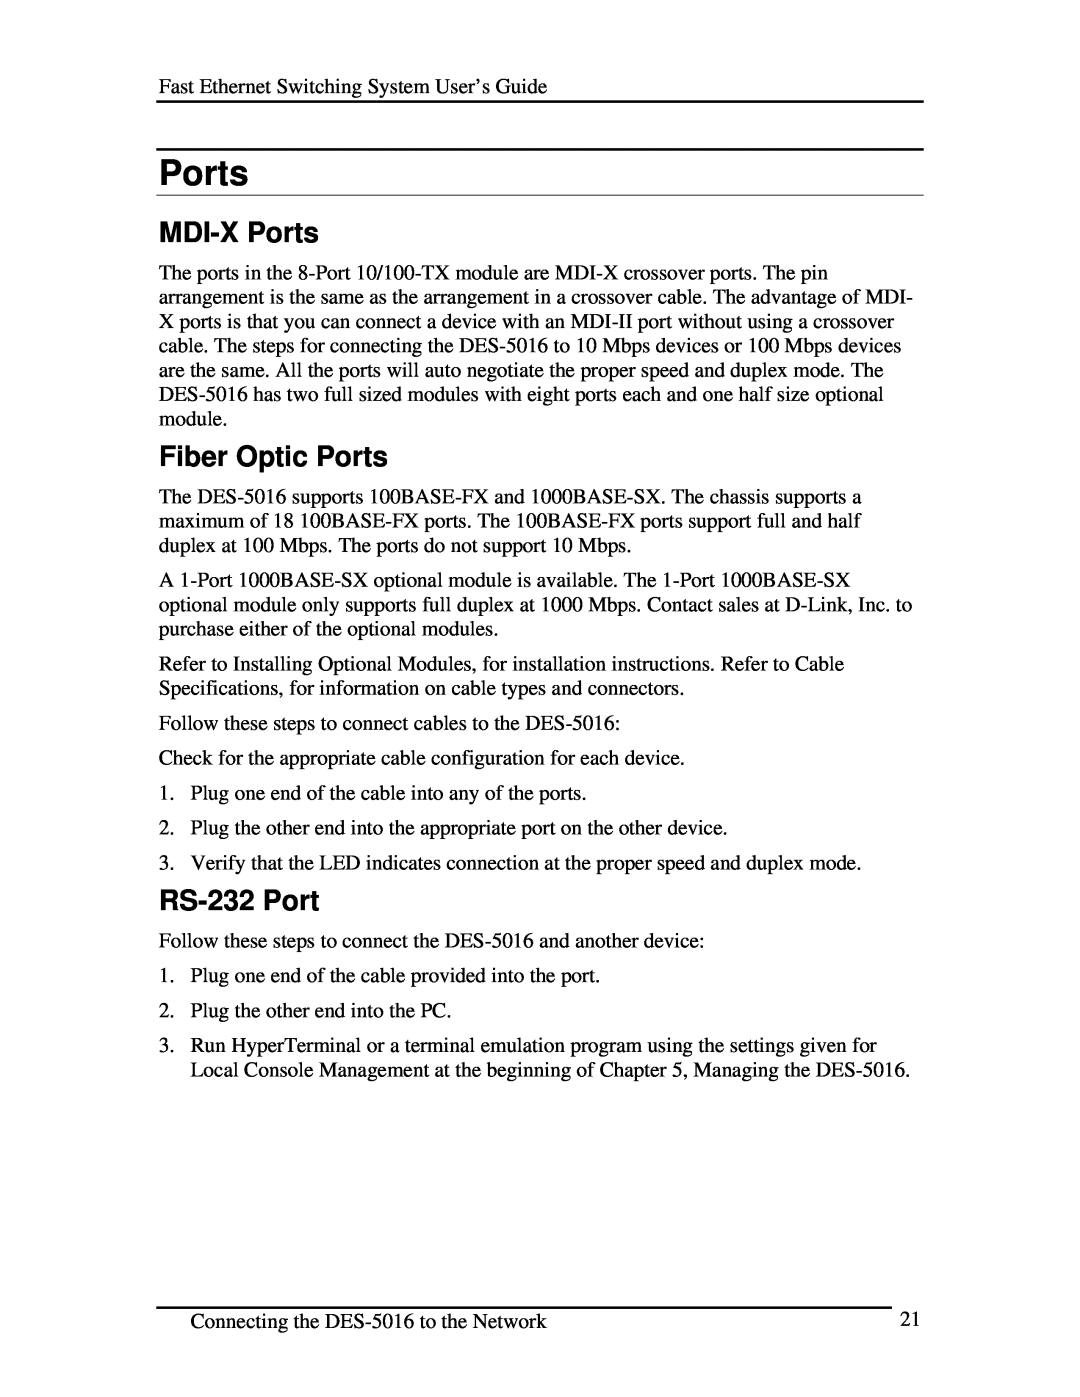 D-Link DES-5016 manual MDI-X Ports, Fiber Optic Ports, RS-232 Port 